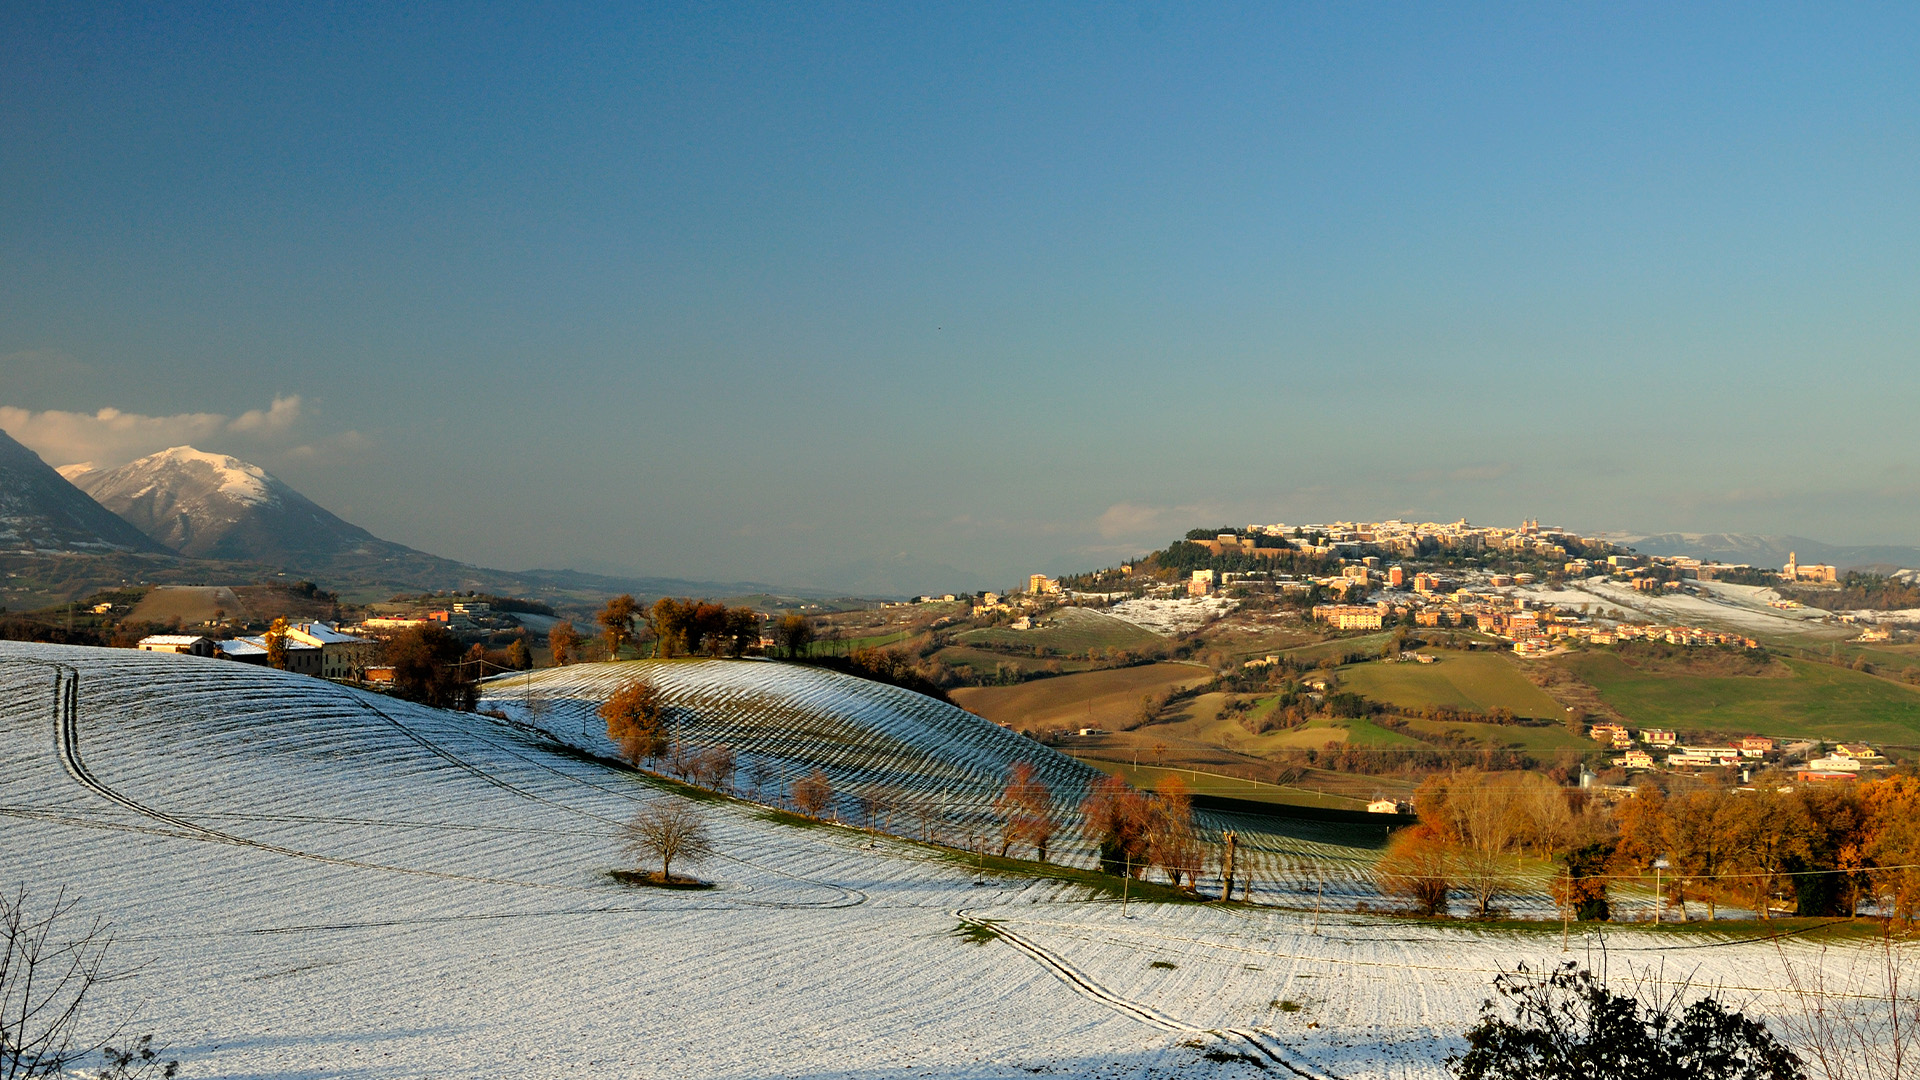 Снимка на град Камерино в Апенинските планини в Италия със сняг по хълма и града в зелената долина отдолу.